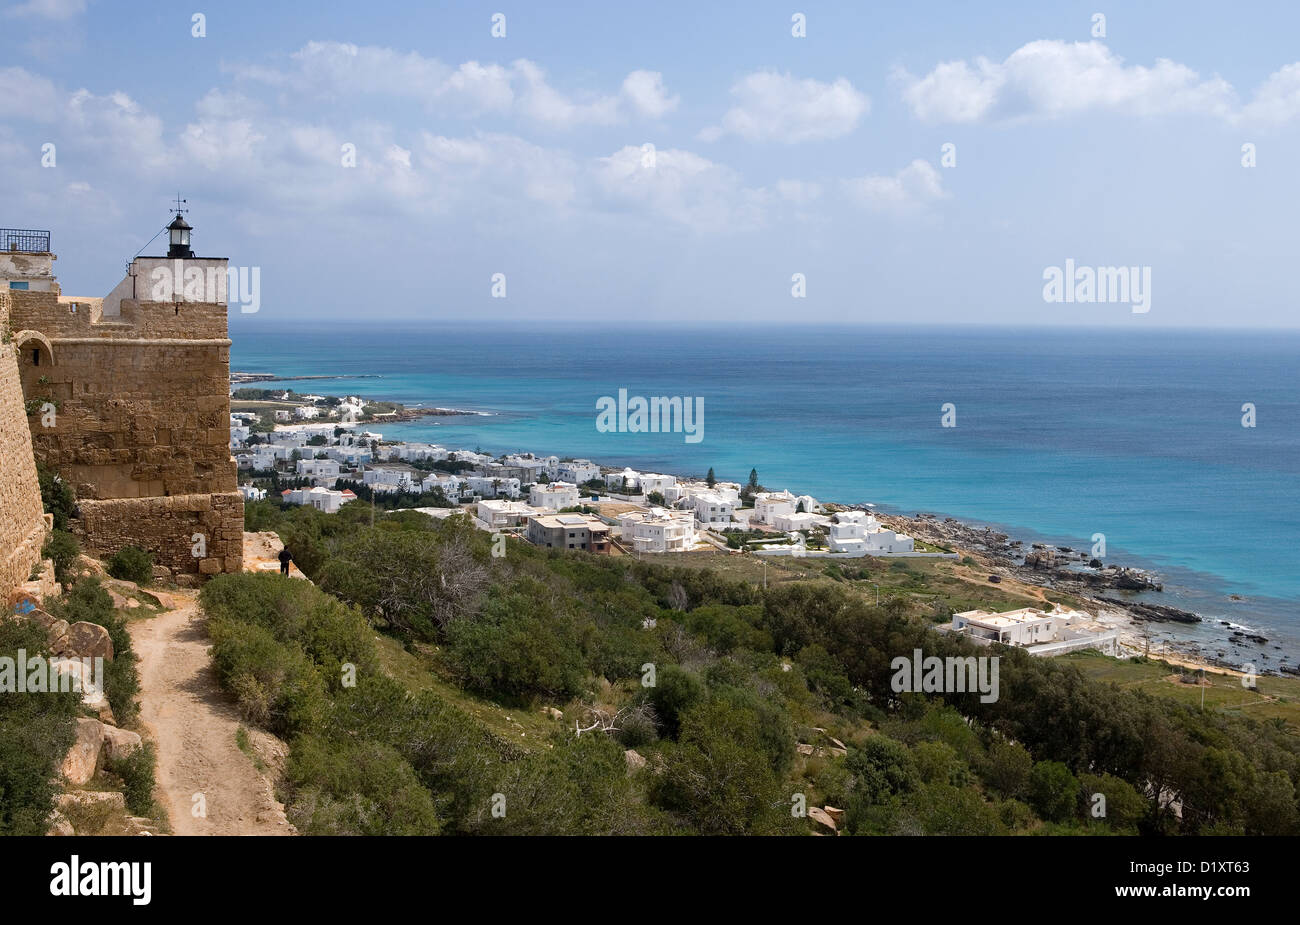 Tunesien Kelibia Blick Auf Das Meer Von Der Festung Aus Dem Xii Jahrhundert Stockfotografie Alamy